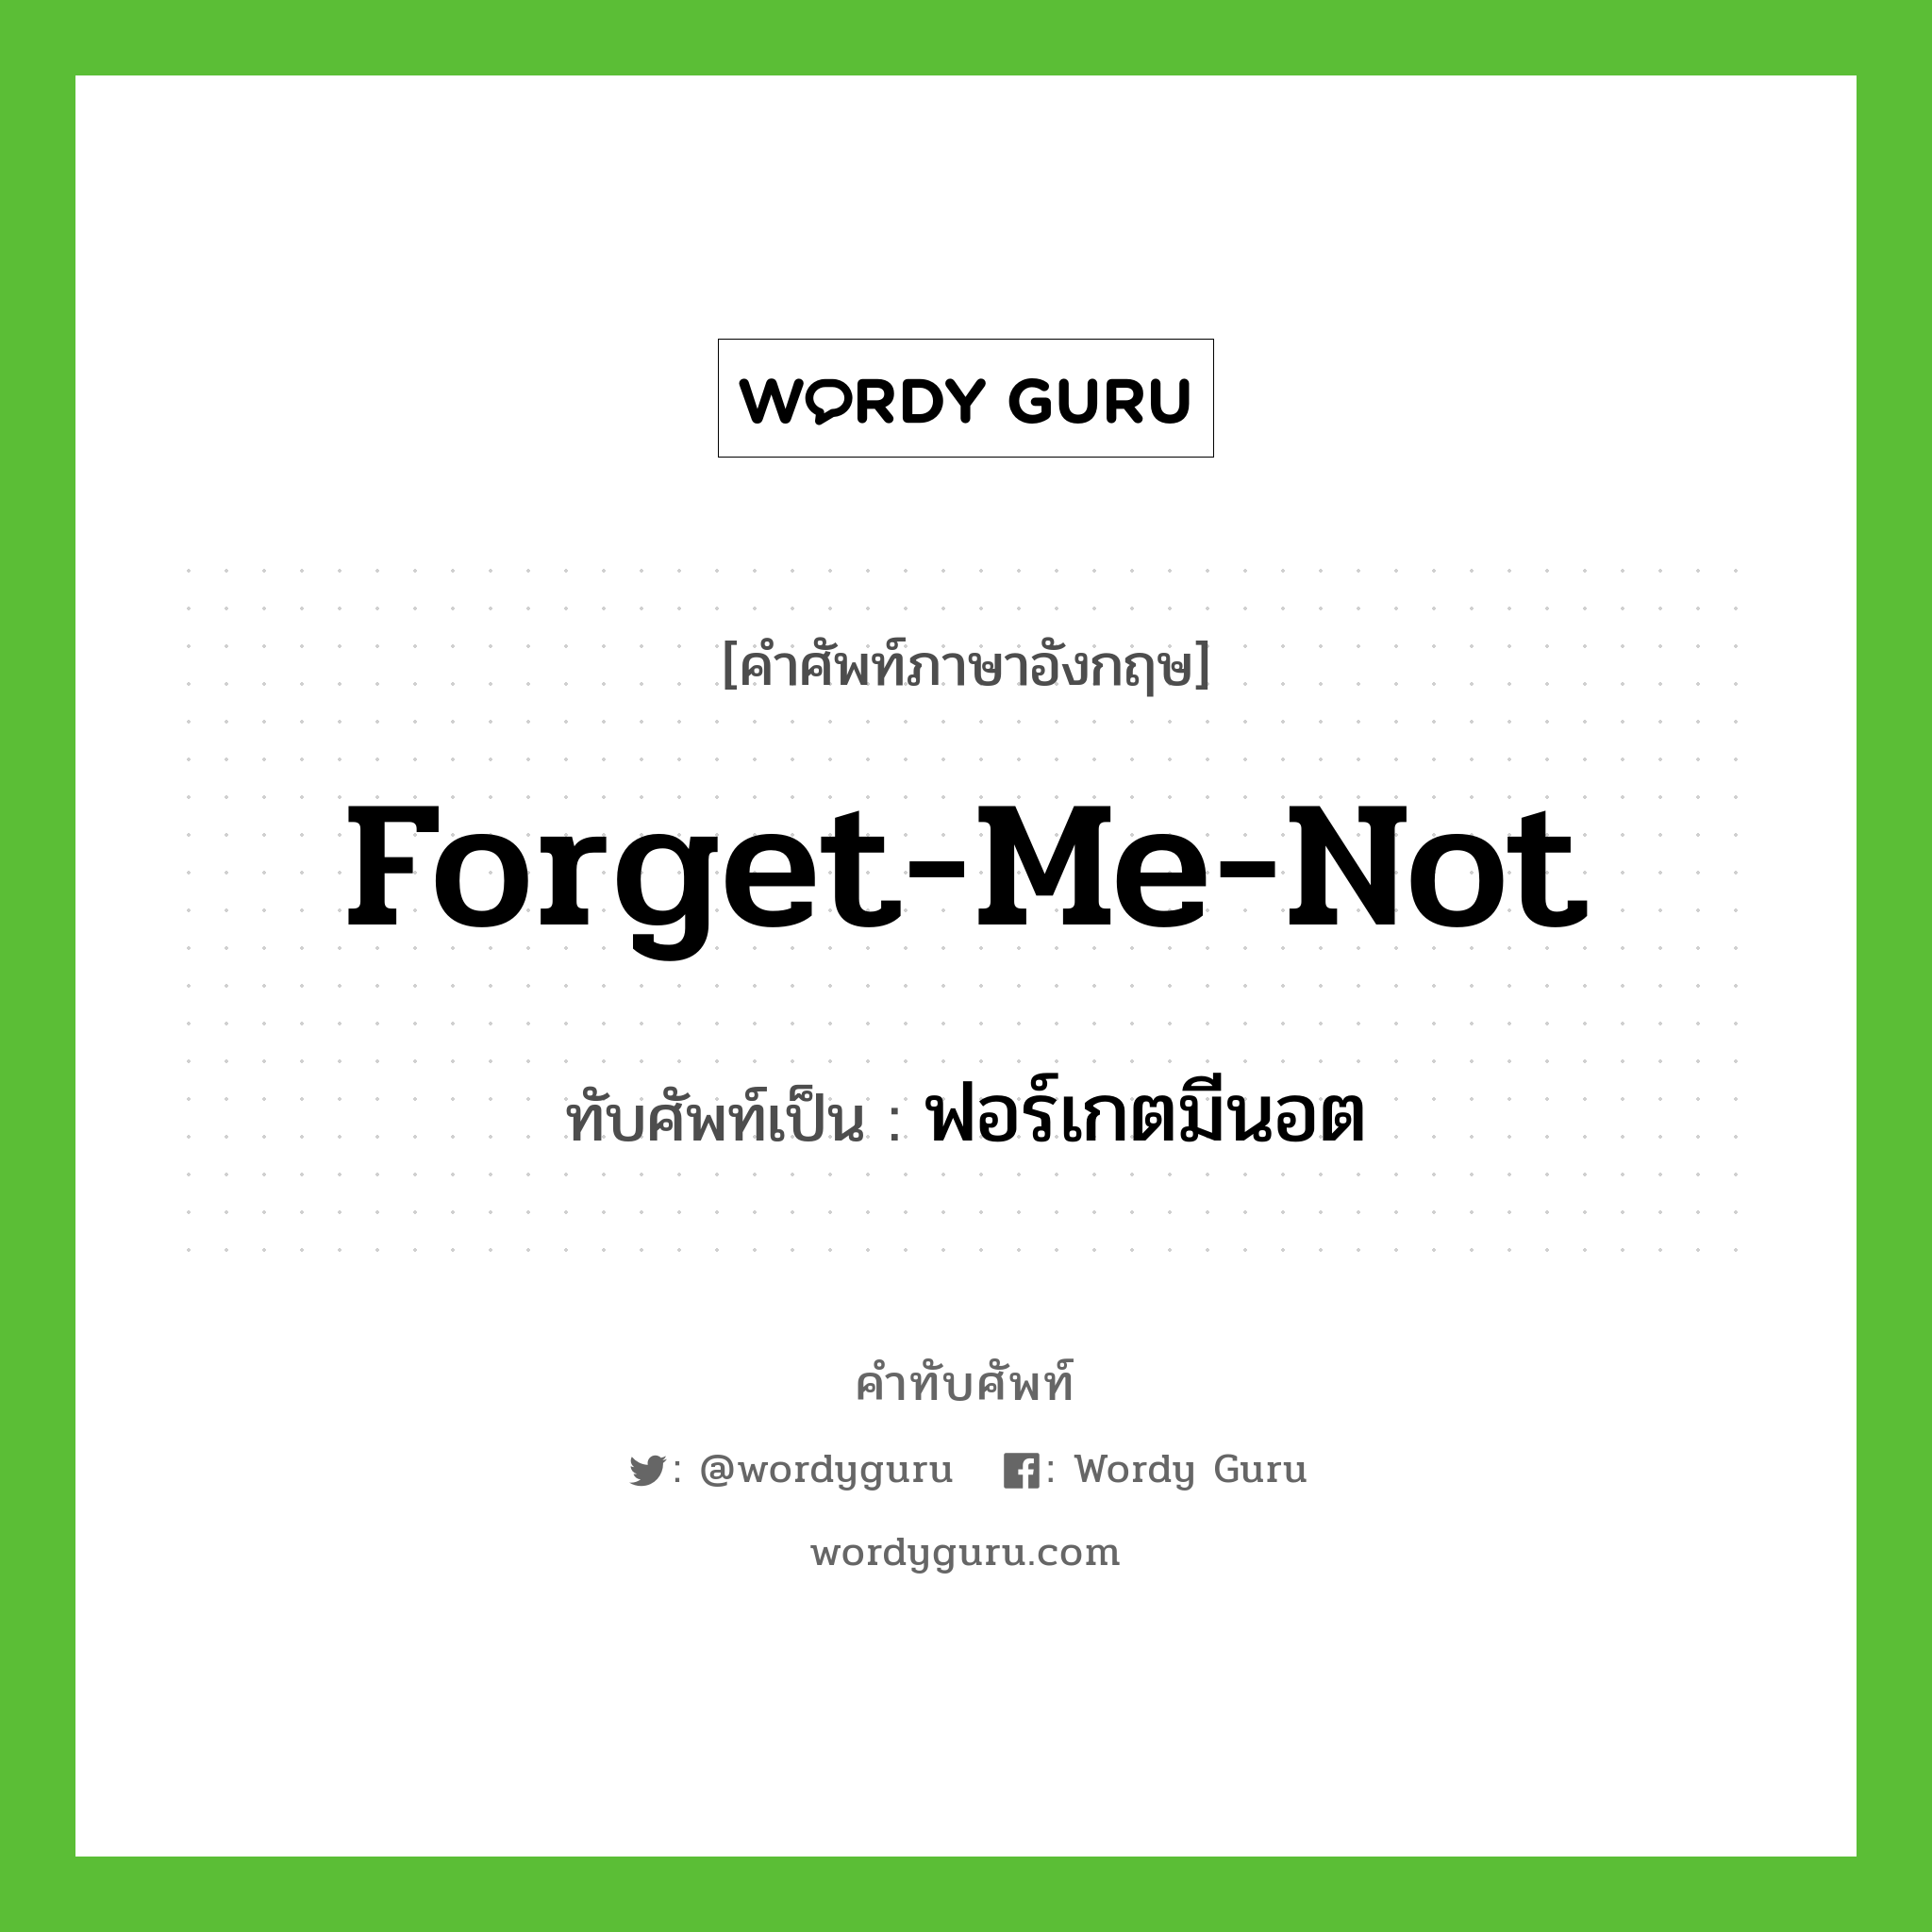 forget-me-not เขียนเป็นคำไทยว่าอะไร?, คำศัพท์ภาษาอังกฤษ forget-me-not ทับศัพท์เป็น ฟอร์เกตมีนอต